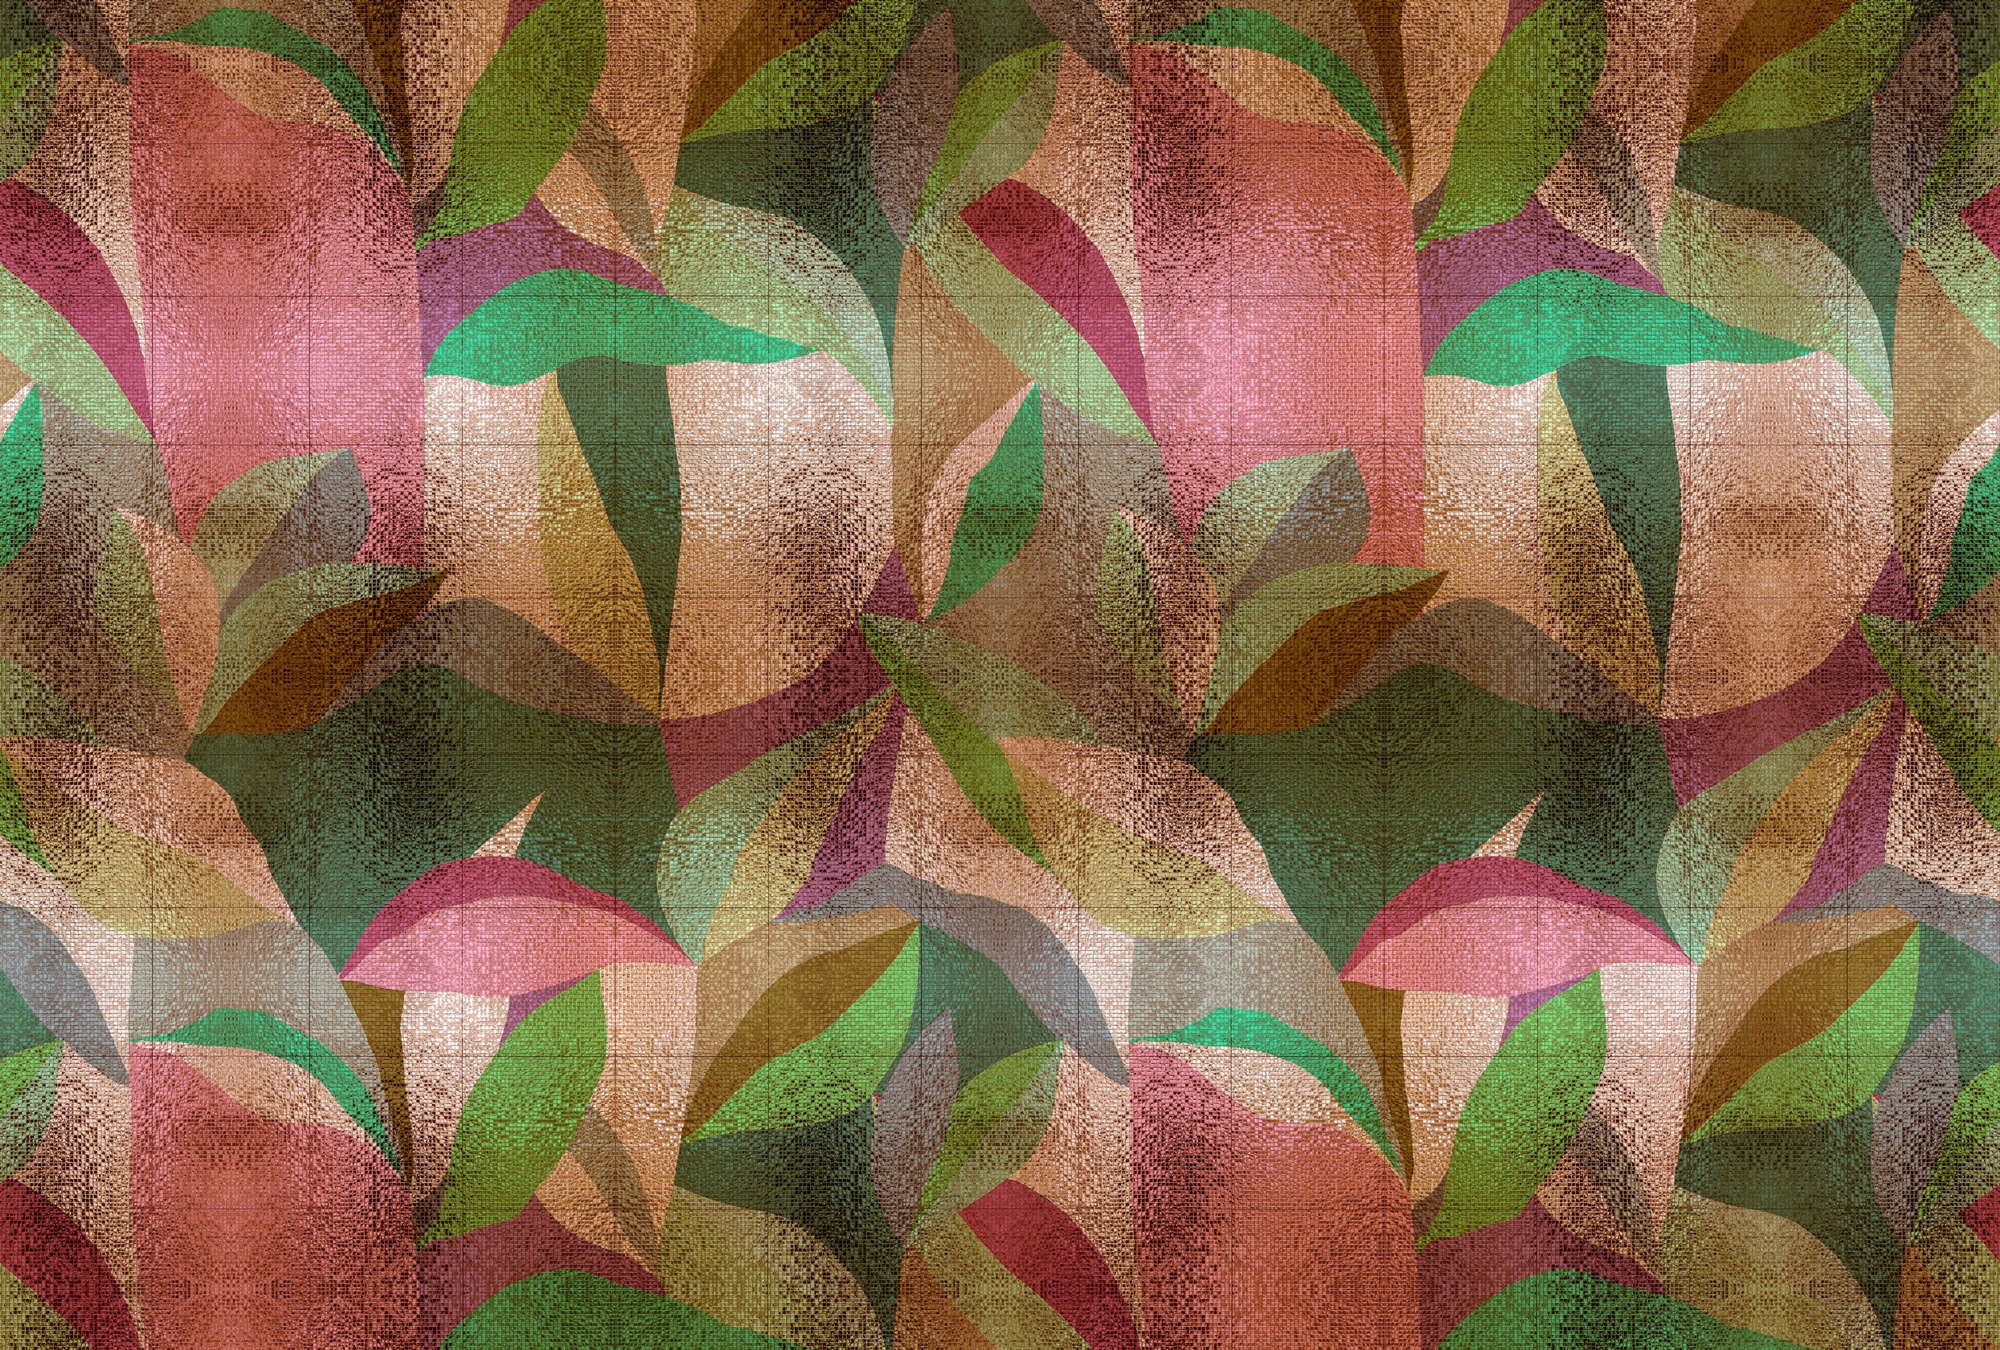             Fototapete »grandezza« - Abstraktes buntes Blätterdesign mit Mosaikstruktur – Glattes, leicht perlmutt-schimmerndes Vlies
        